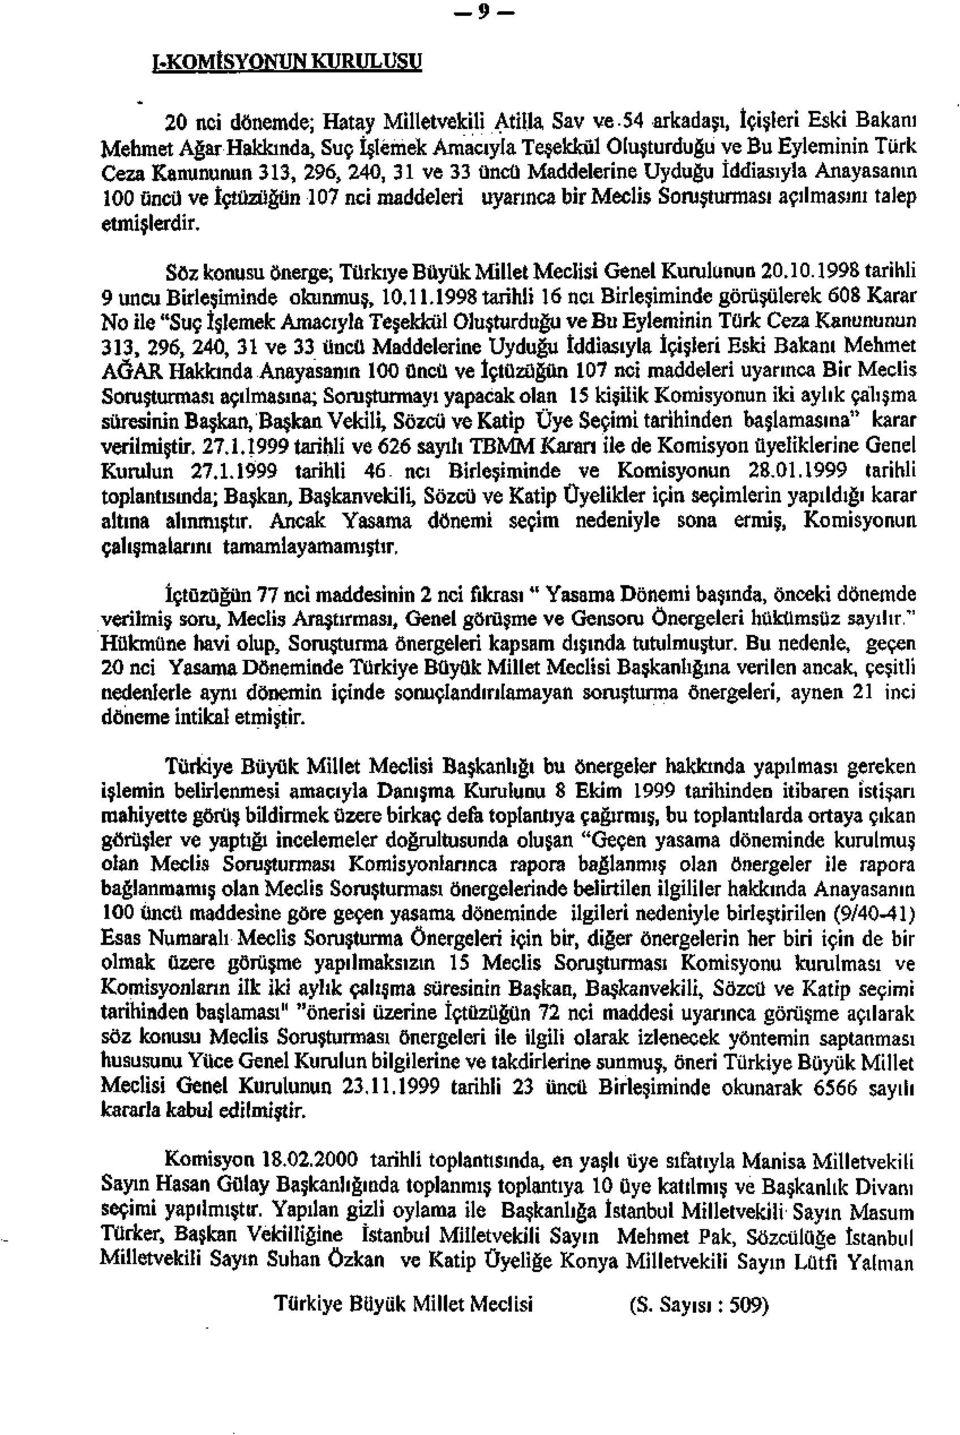 Söz konusu önerge; Türkiye Büyük Millet Meclisi Genel Kurulunun 20.10.1998 tarihli 9 uncu Birleşiminde okunmuş, 10.11.